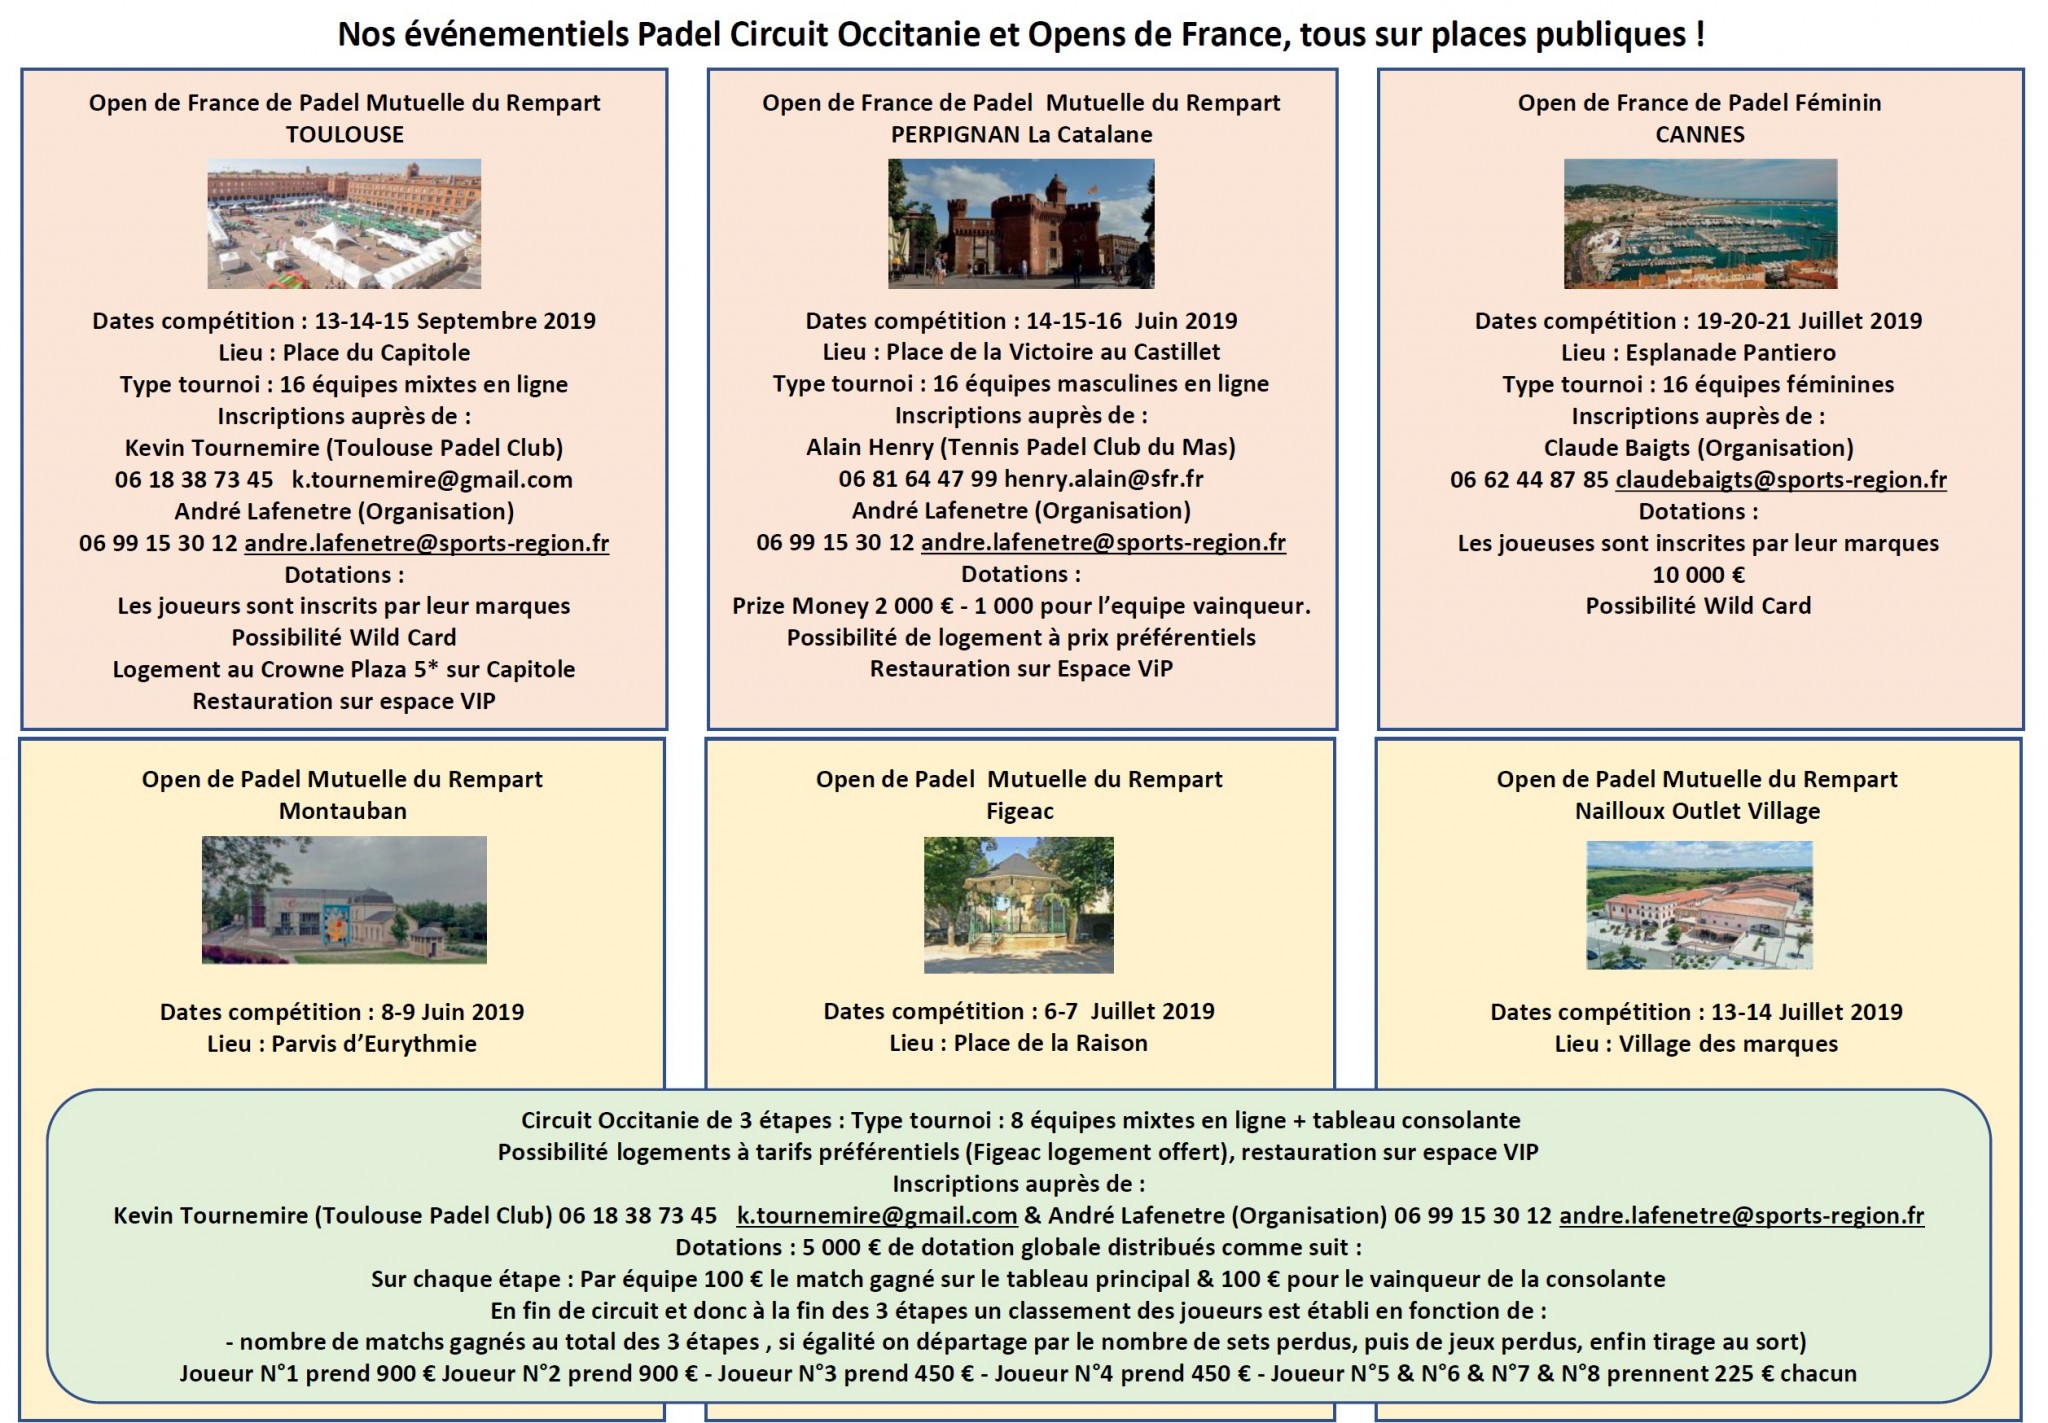 French Open von padel : 6 Etappen an öffentlichen Orten